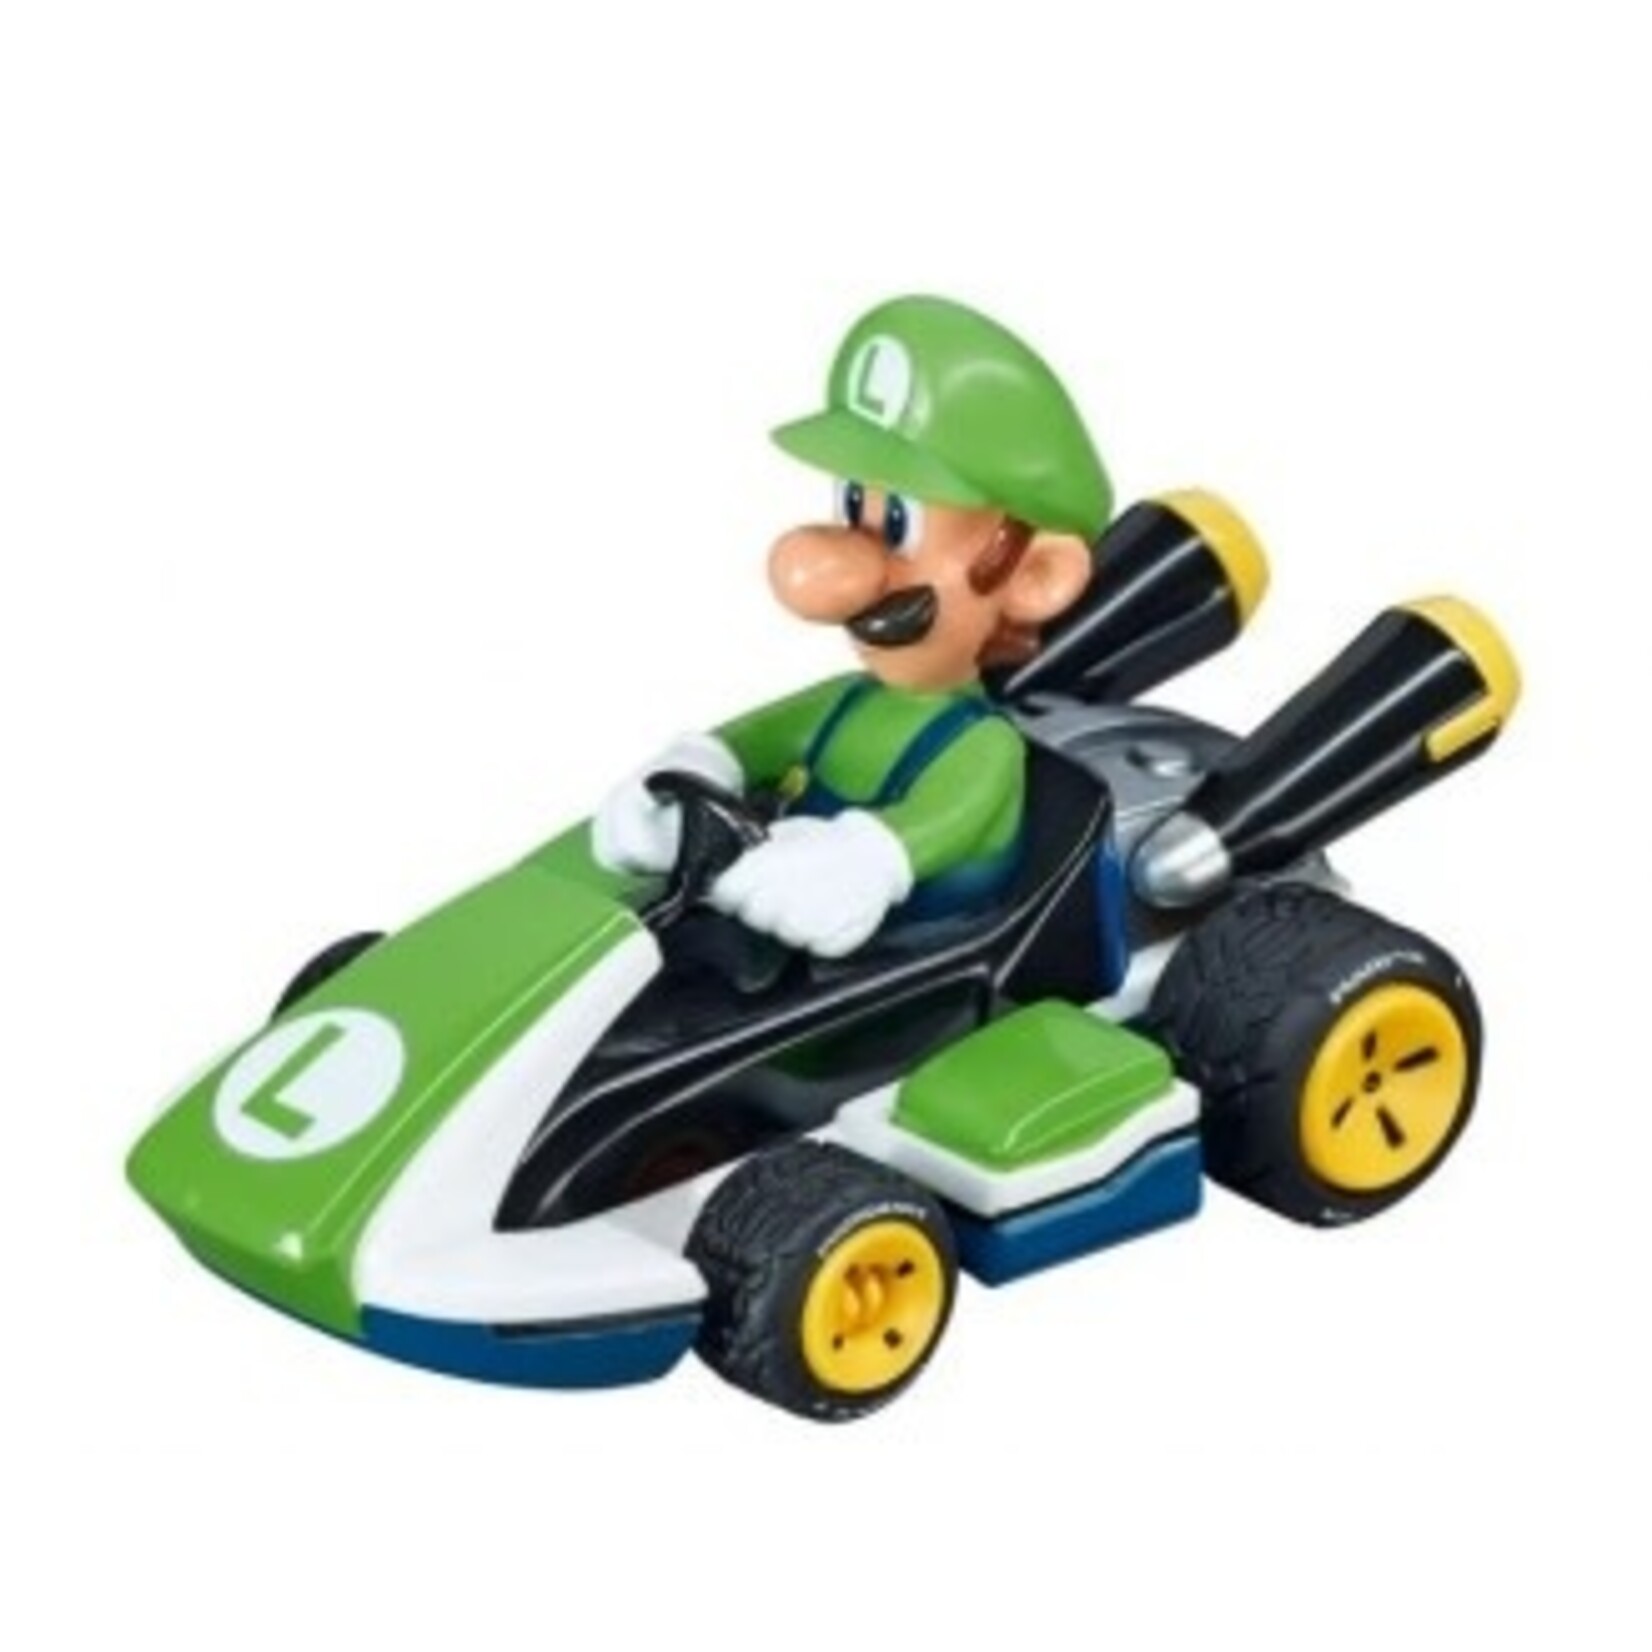 Carrera GO!!! Mario Kart™ Slot Car 1:43 Racing Set